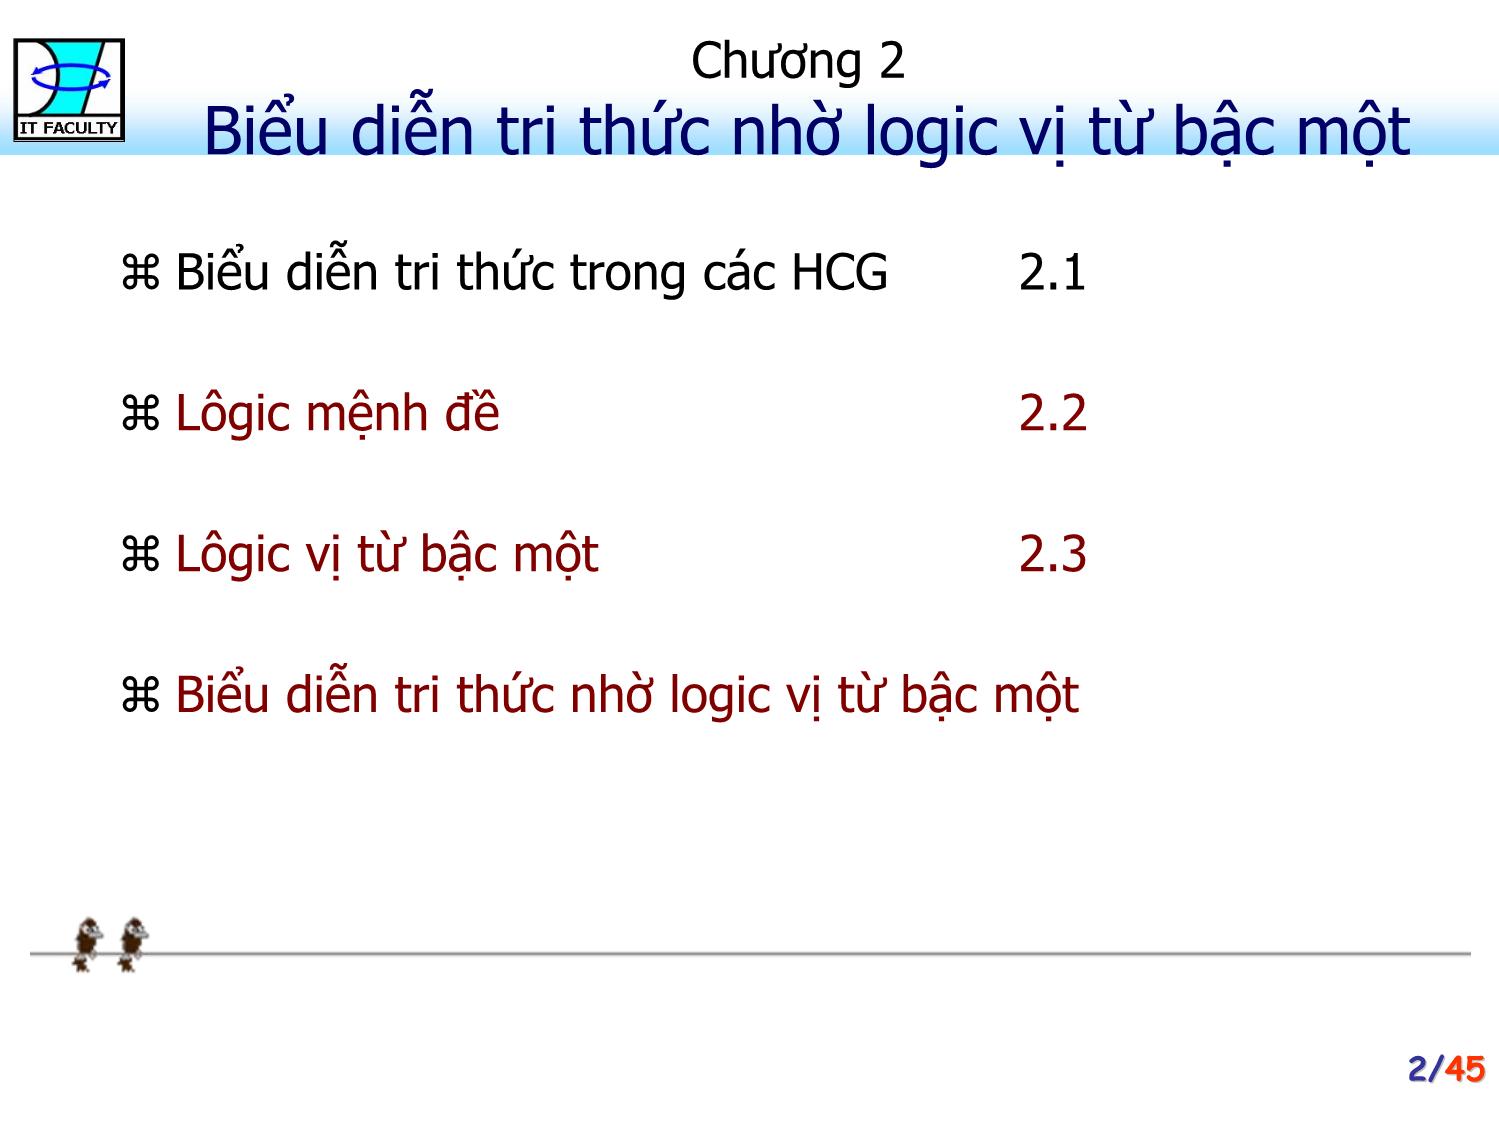 Bài giảng Hệ chuyên gia - Chương 2, Phần 1: Biểu diễn tri thức nhờ logic vị từ bậc một - Phan Huy Khánh trang 2